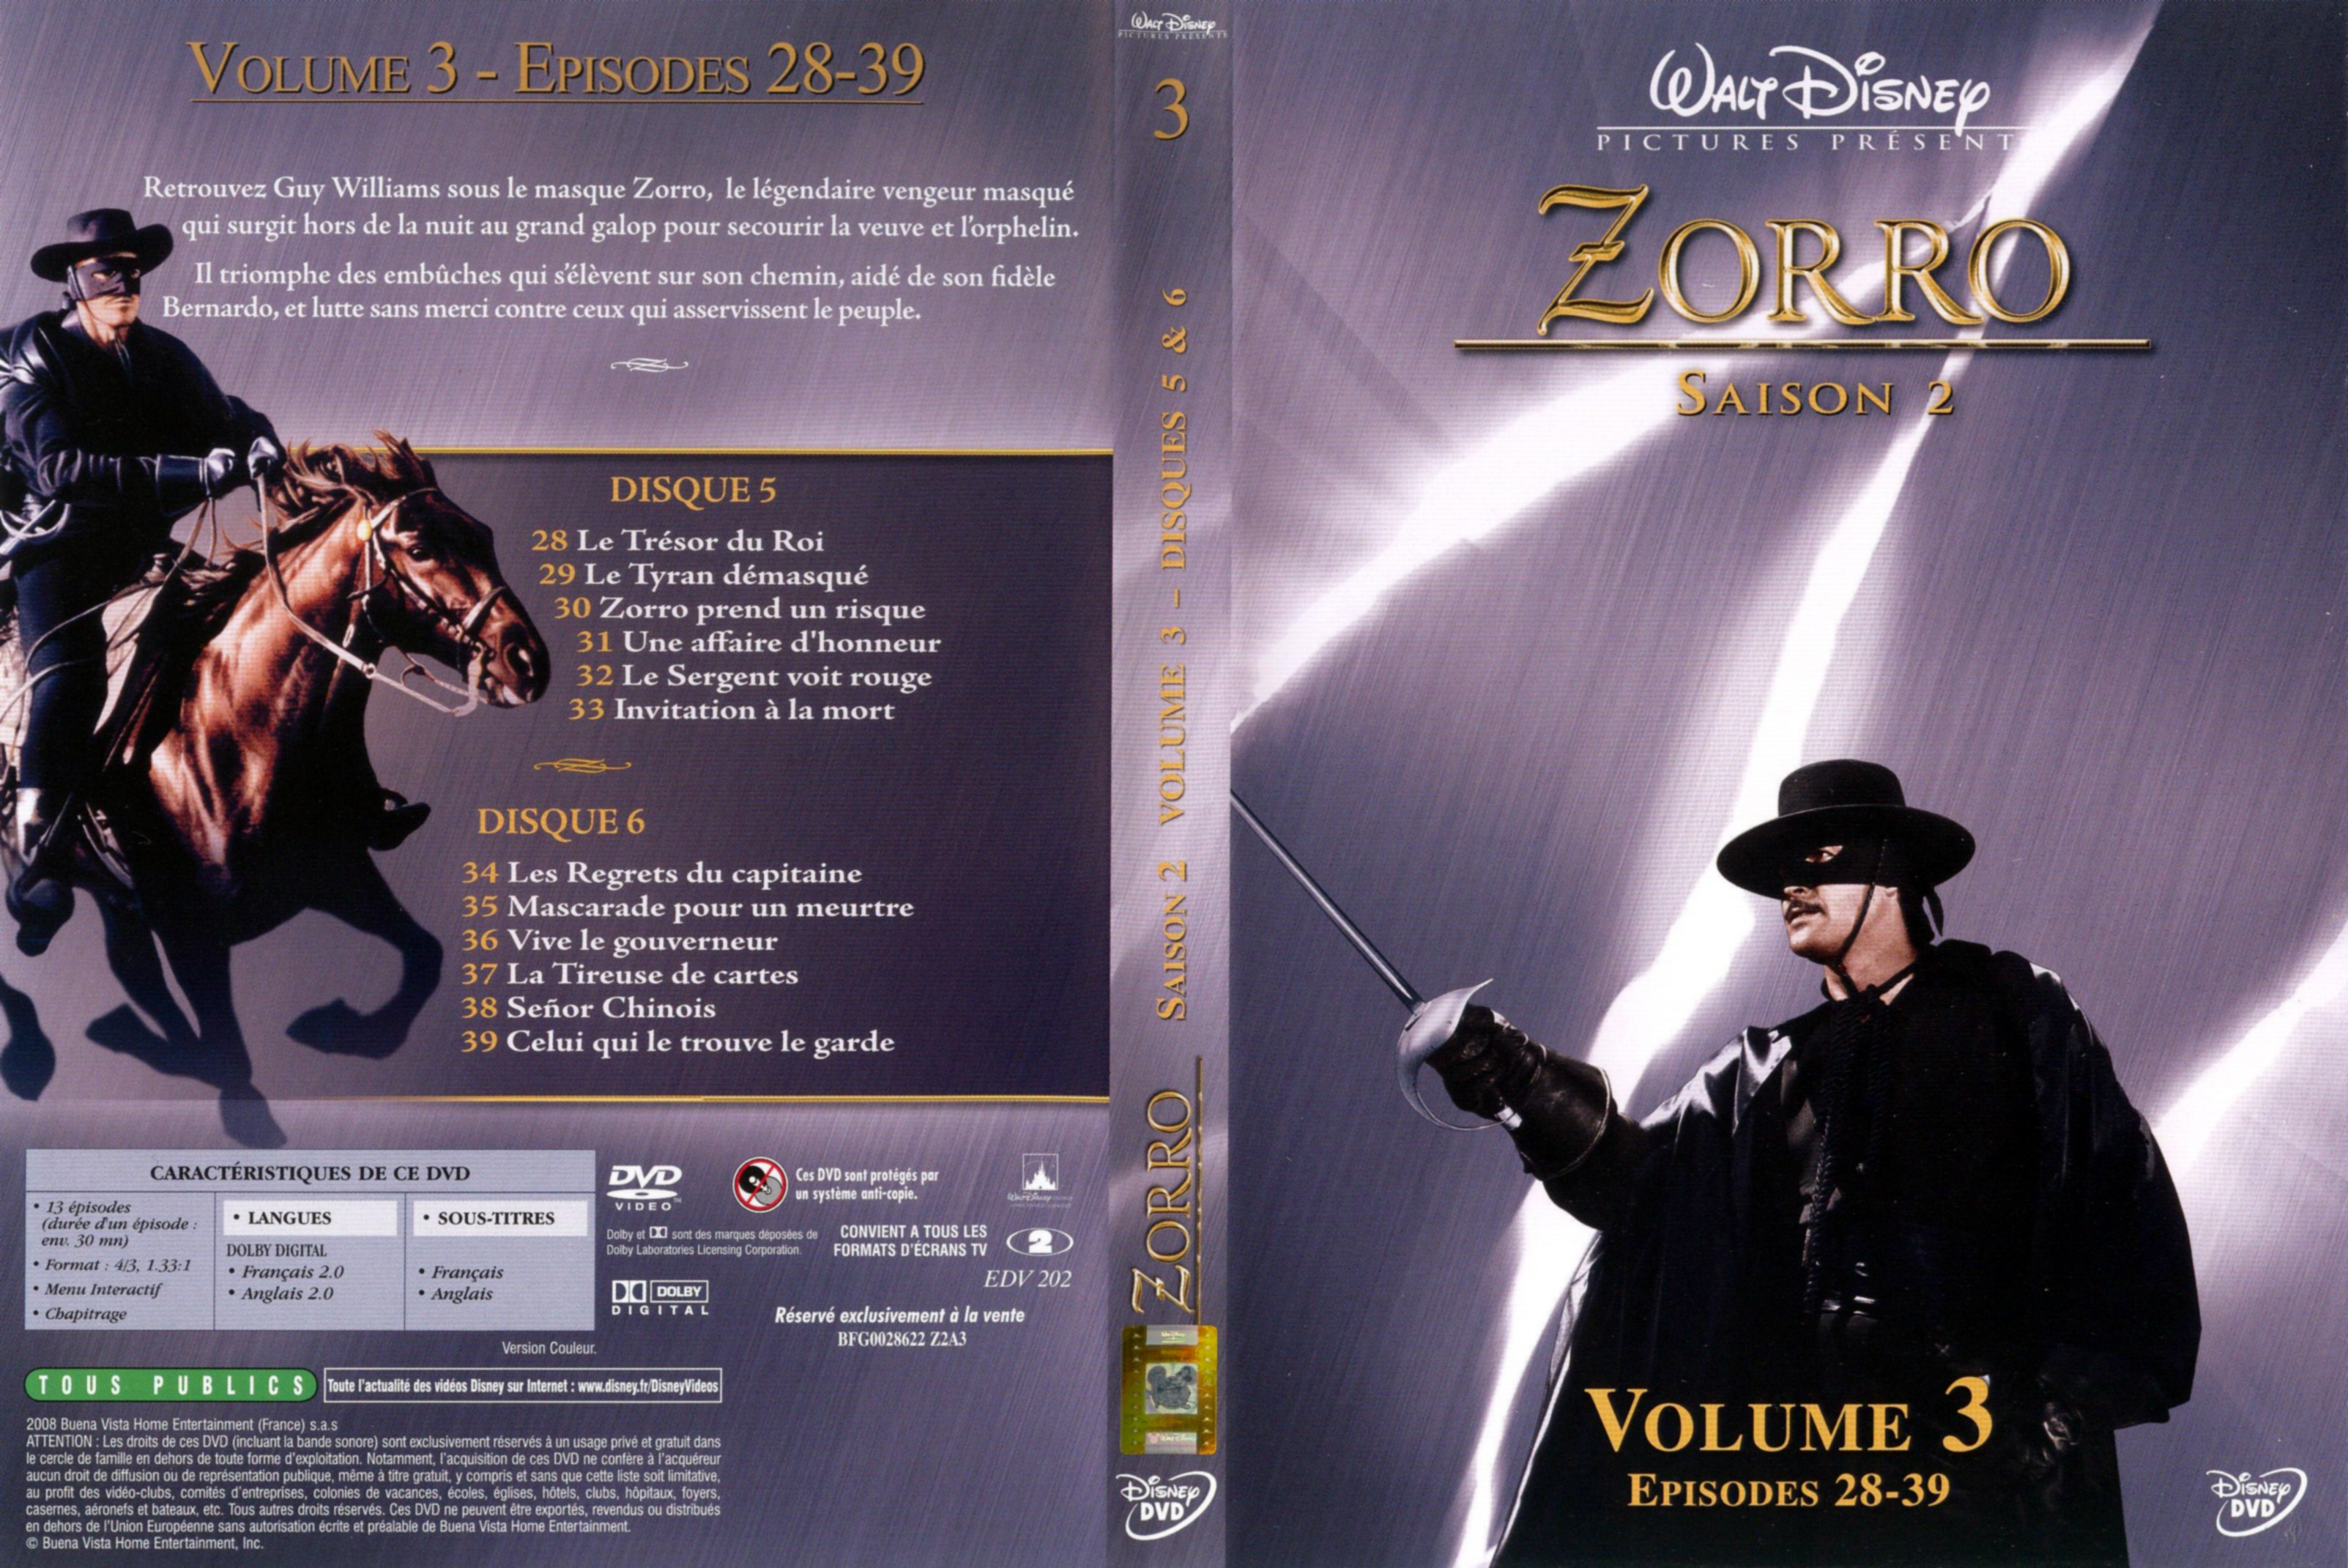 Jaquette DVD Zorro saison 2 vol 3